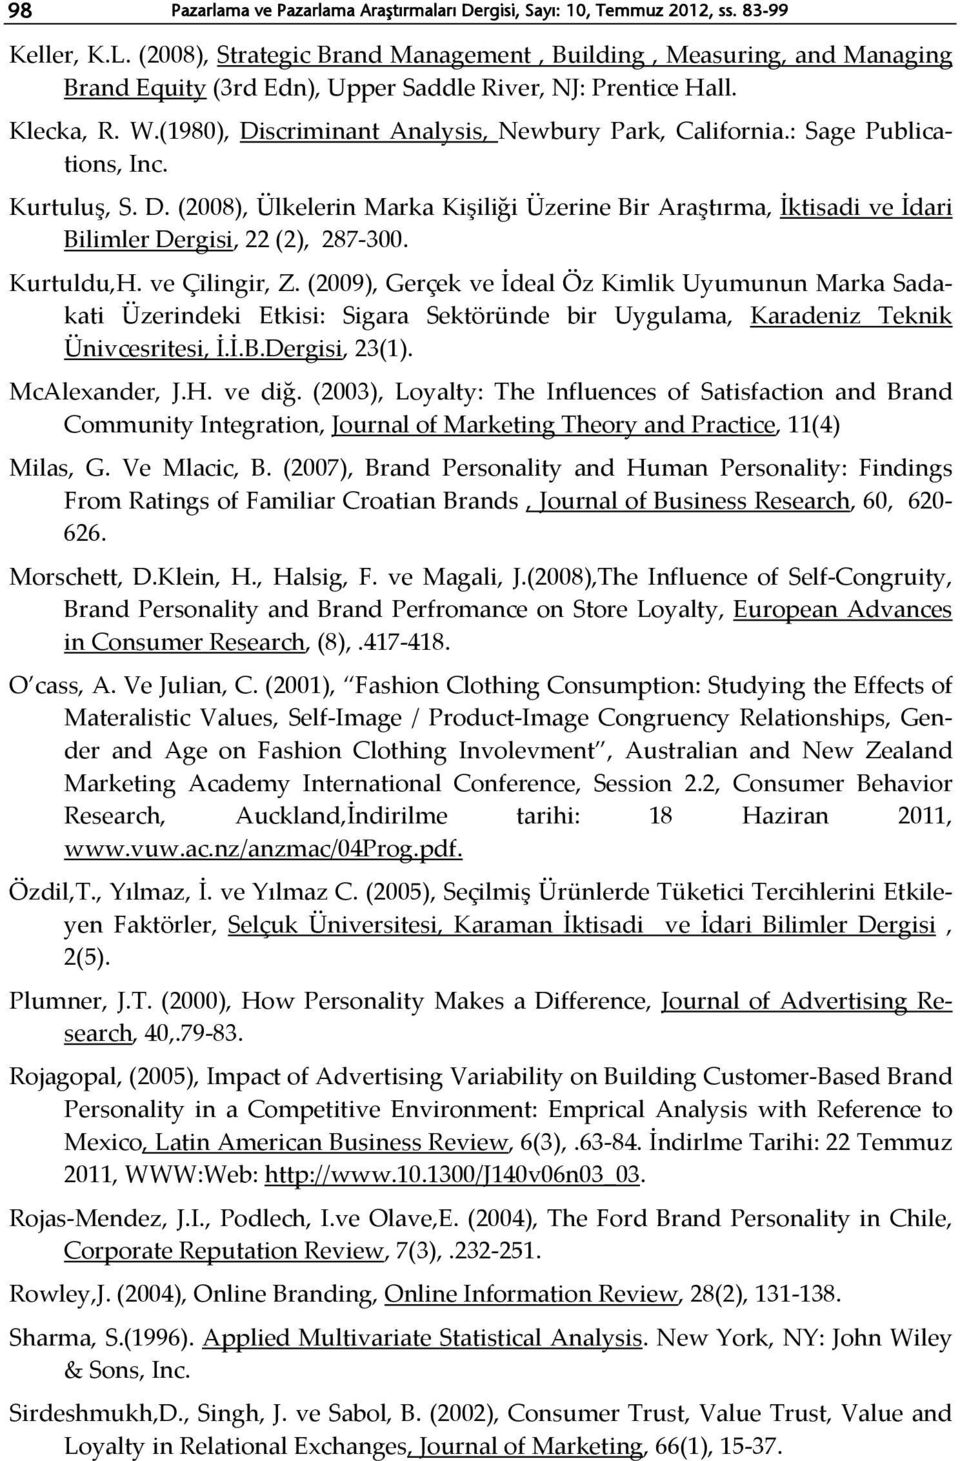 (1980), Discriminant Analysis, Newbury Park, California.: Sage Publications, Inc. Kurtuluş, S. D. (2008), Ülkelerin Marka Kişiliği Üzerine Bir Araştırma, İktisadi ve İdari Bilimler Dergisi, 22 (2), 287-300.